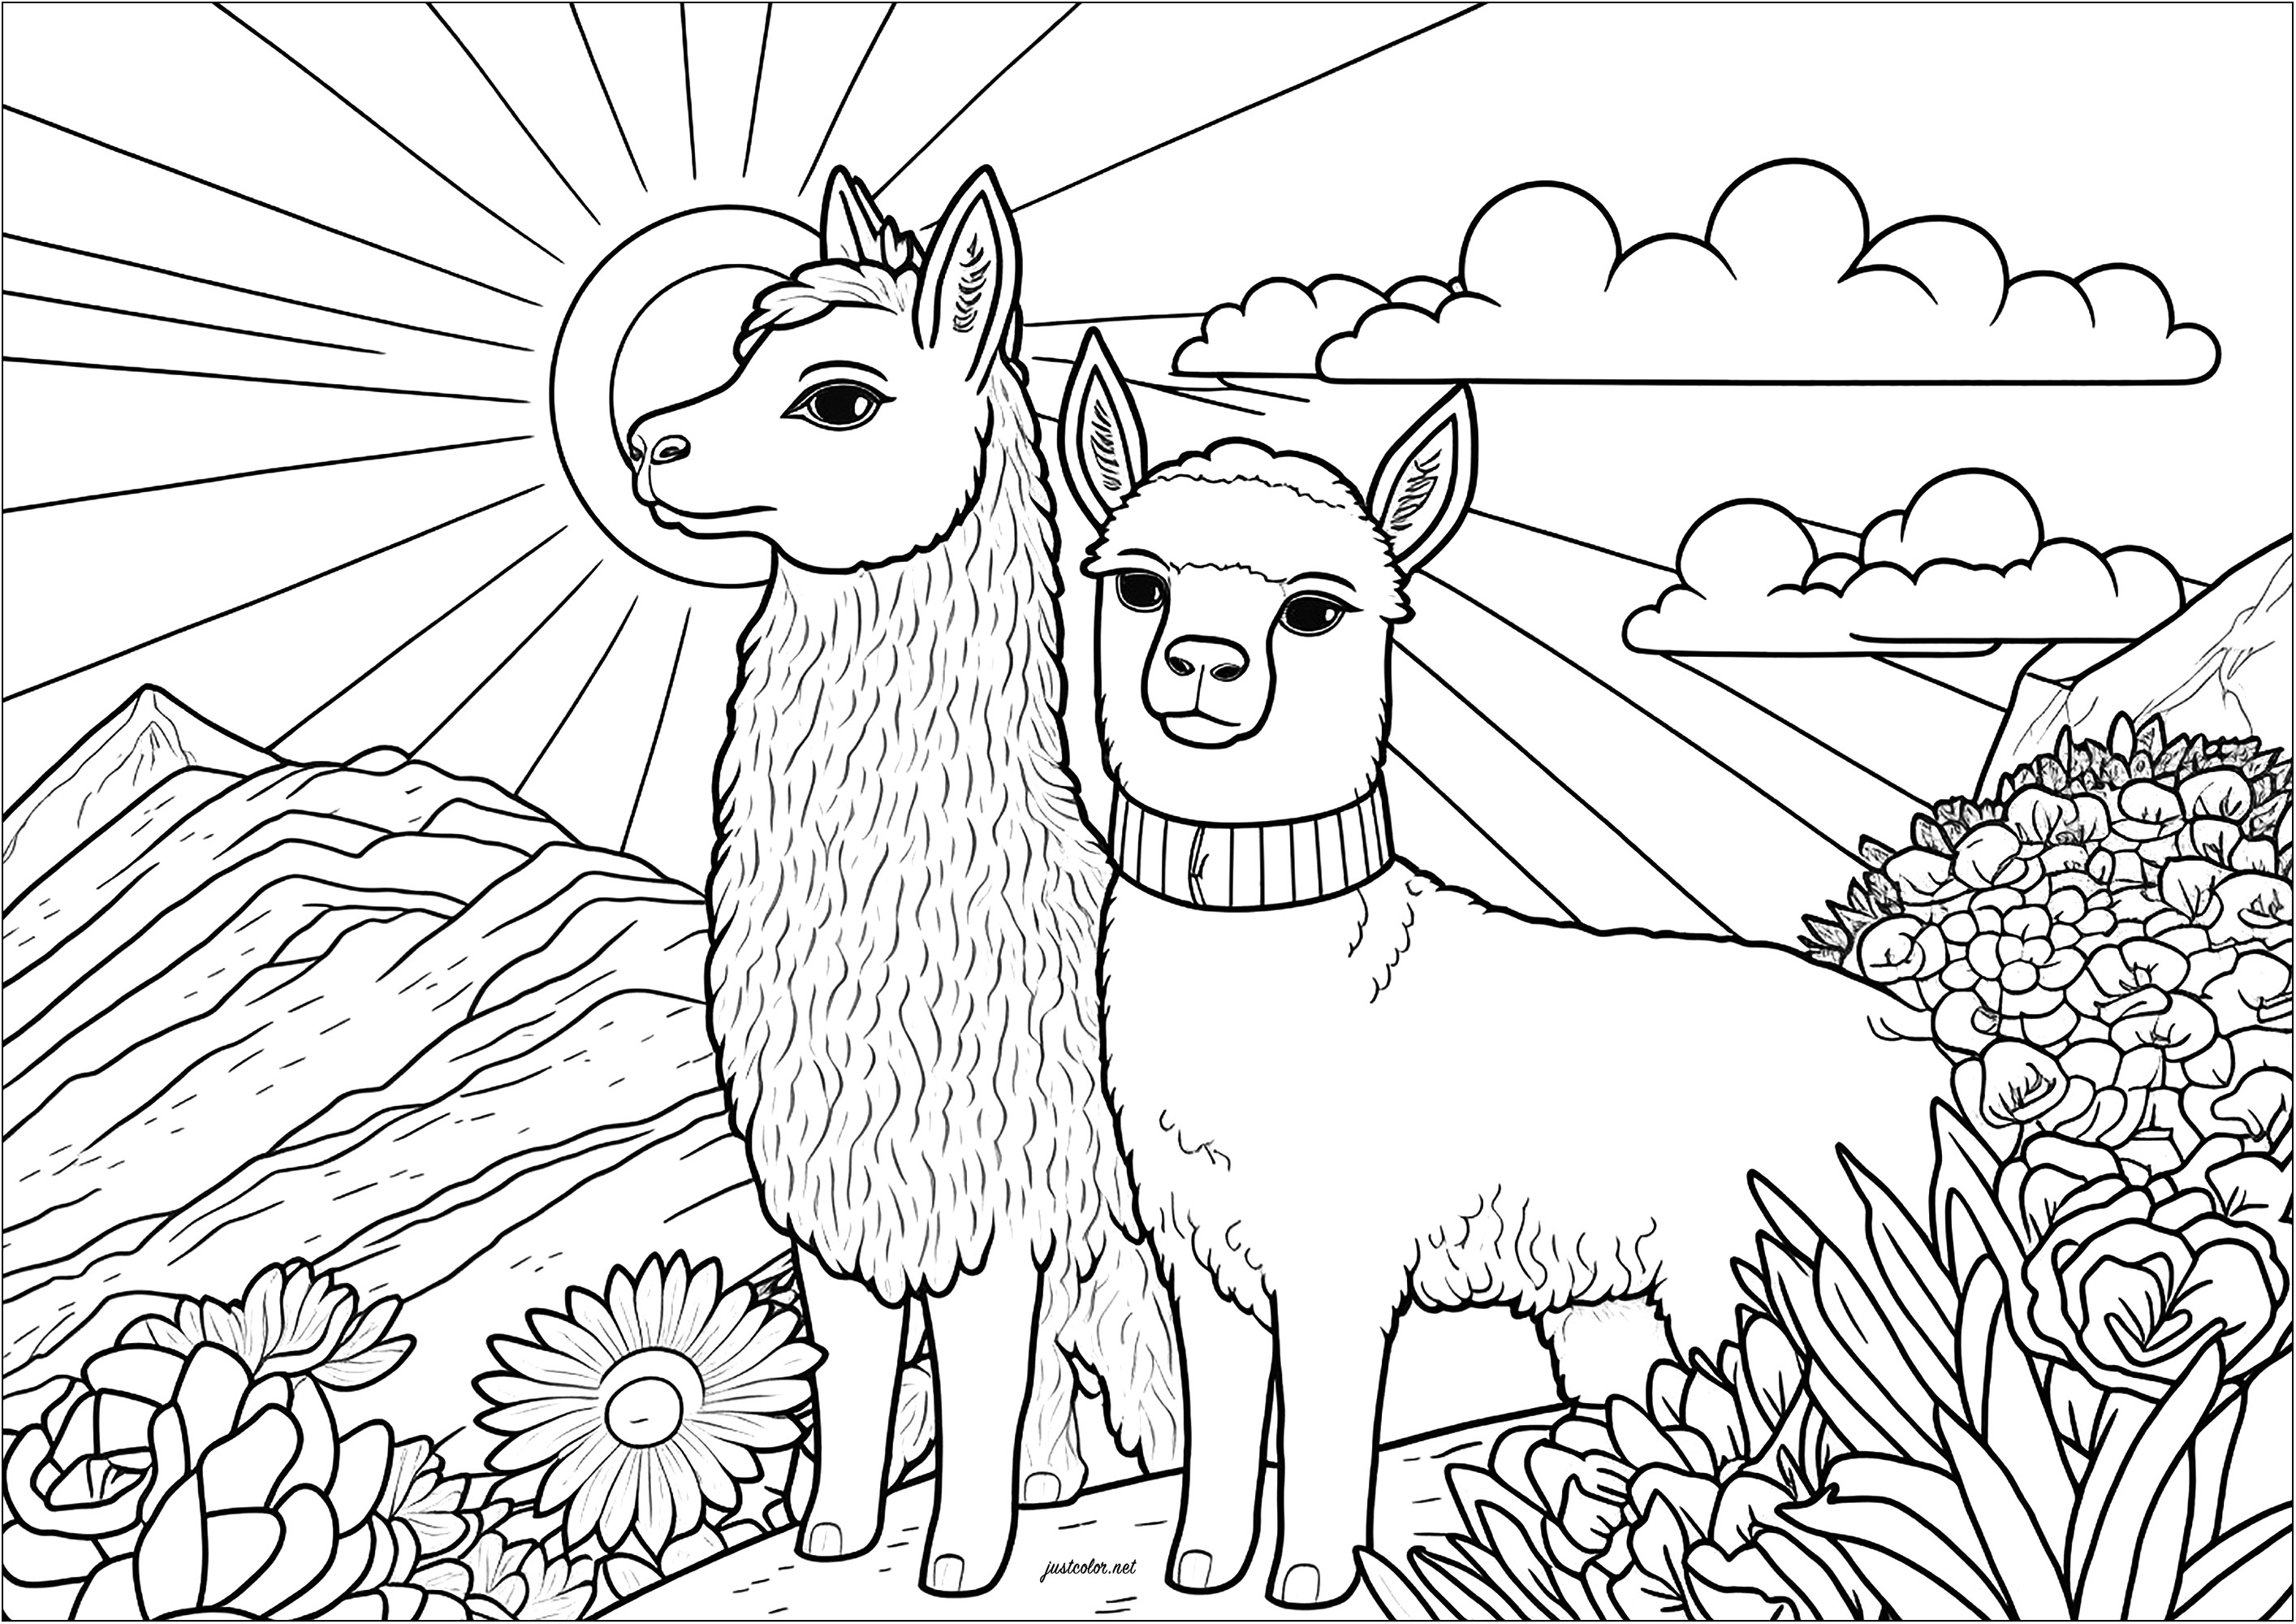 Zwei ernsthafte Lamas färben. Diese Färbung zeigt zwei ernste Lamas, die nebeneinander stehen. Sie scheinen aufrecht, aufmerksam und ruhig zu sein. Wir können uns vorstellen, dass sie die Landschaft um sich herum betrachten und dass sie sich in ihrer Umgebung wohlfühlen.